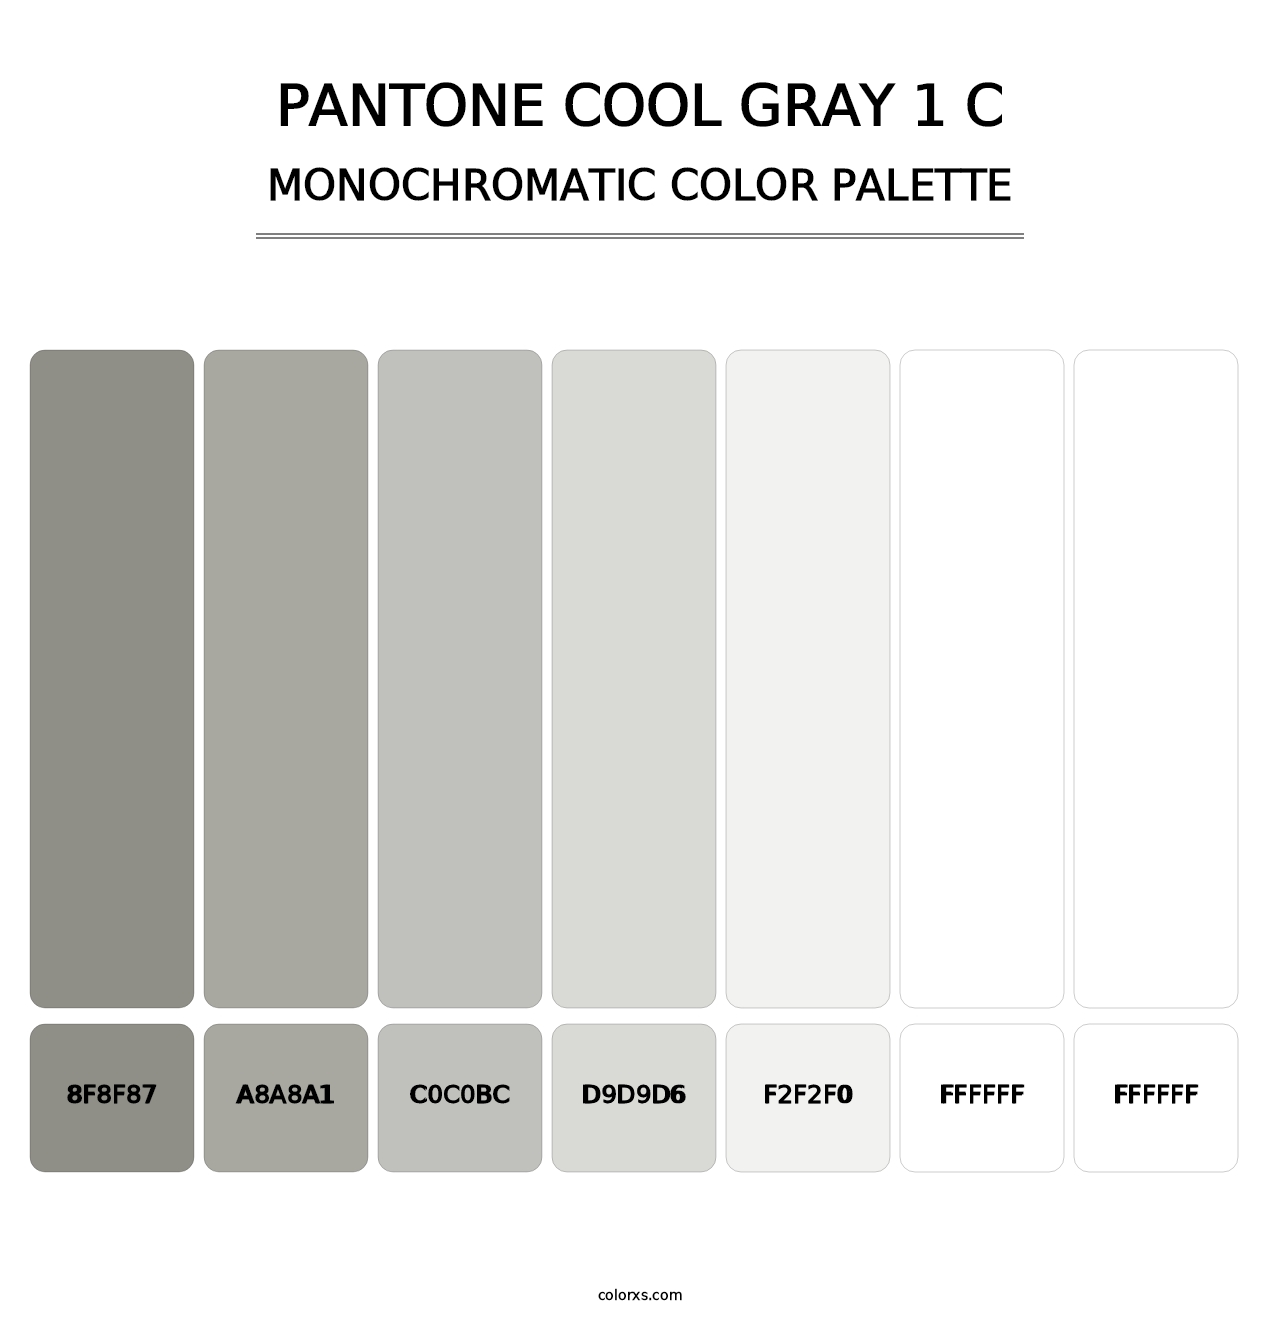 PANTONE Cool Gray 1 C - Monochromatic Color Palette